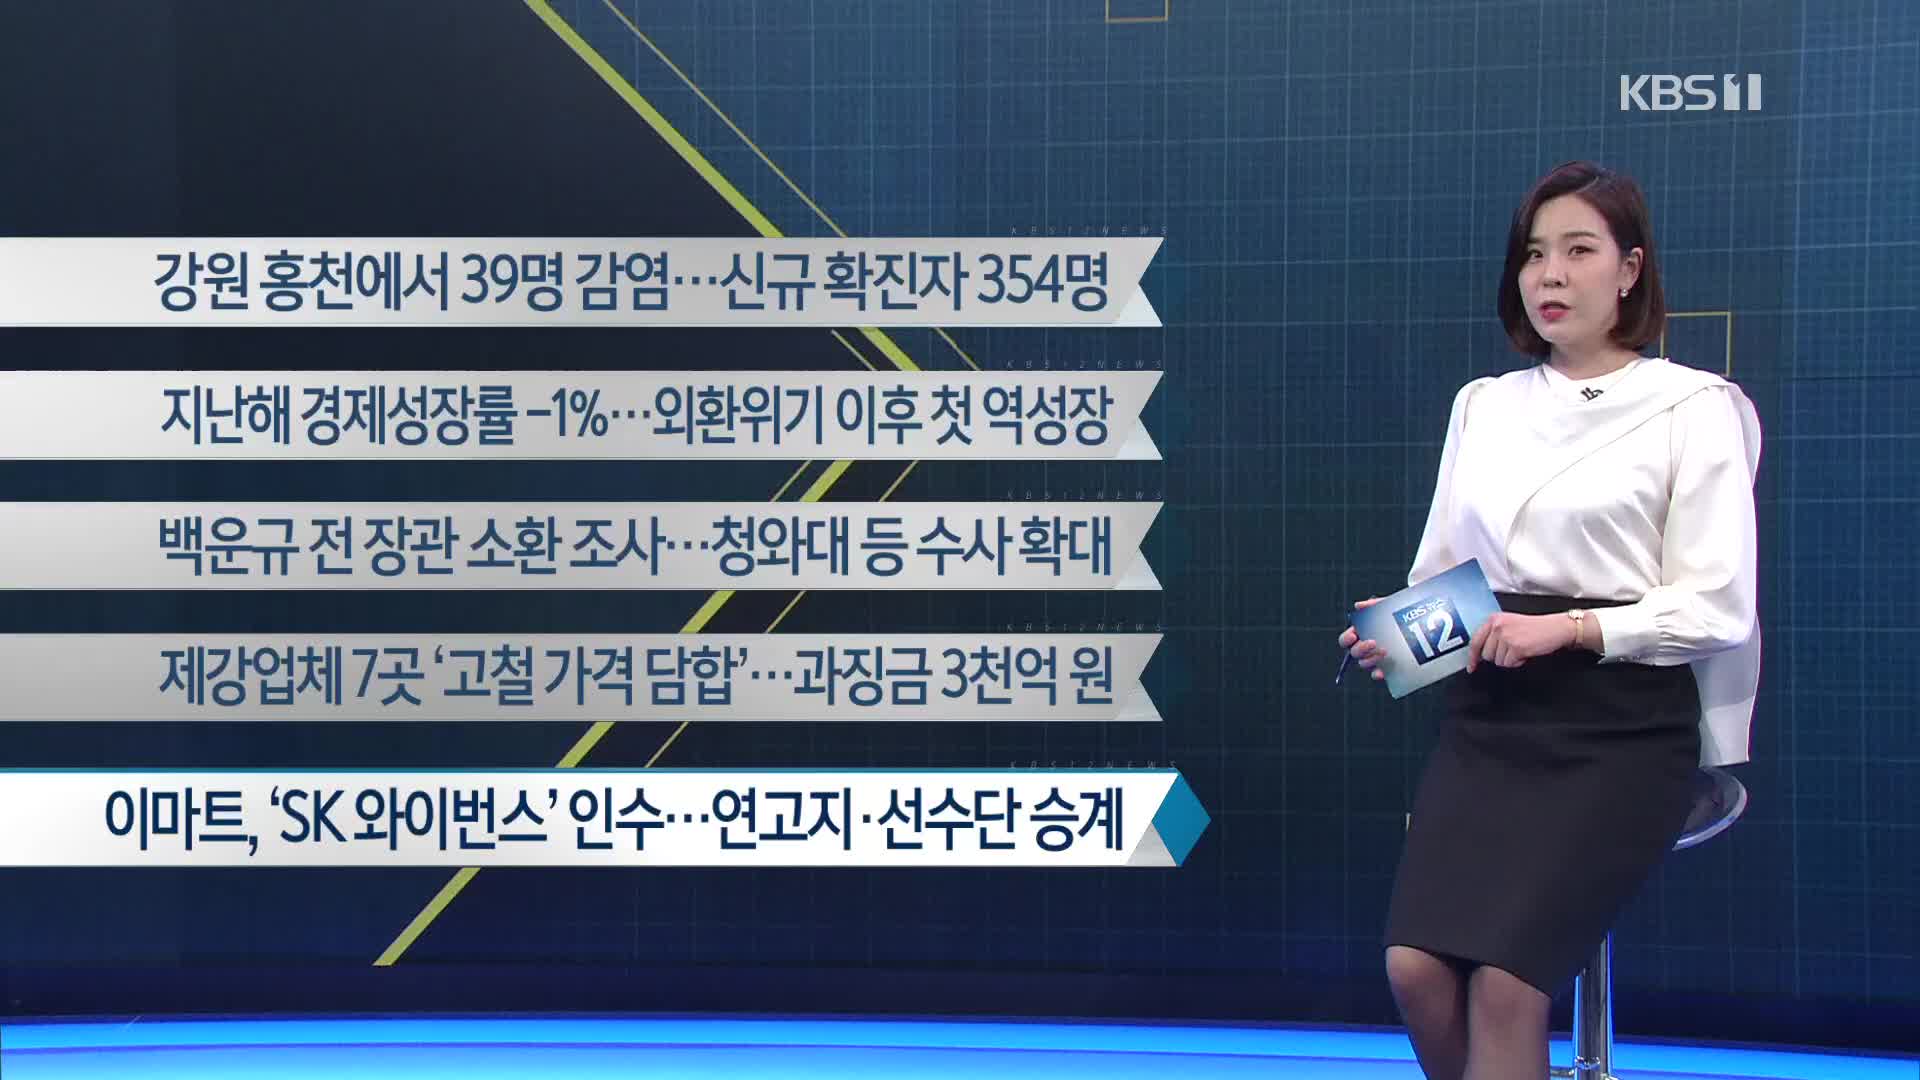 [이 시각 주요뉴스] 강원 홍천에서 39명 감염…신규 확진자 354명 외